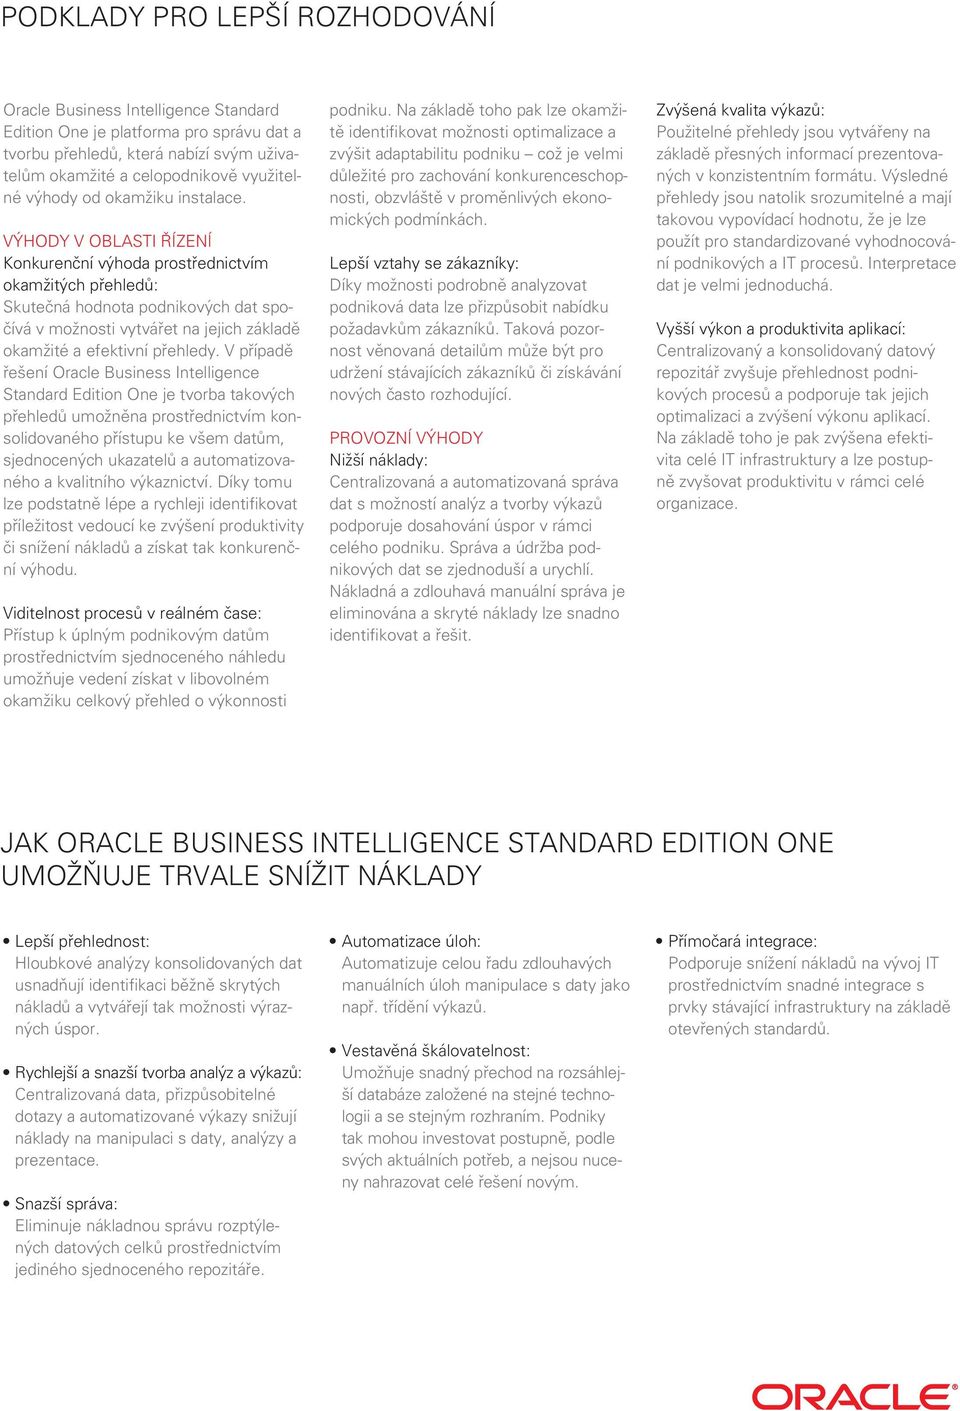 V případě řešení Oracle Business Intelligence Standard Edition One je tvorba takových přehledů umožněna prostřednictvím konsolidovaného přístupu ke všem datům, sjednocených ukazatelů a